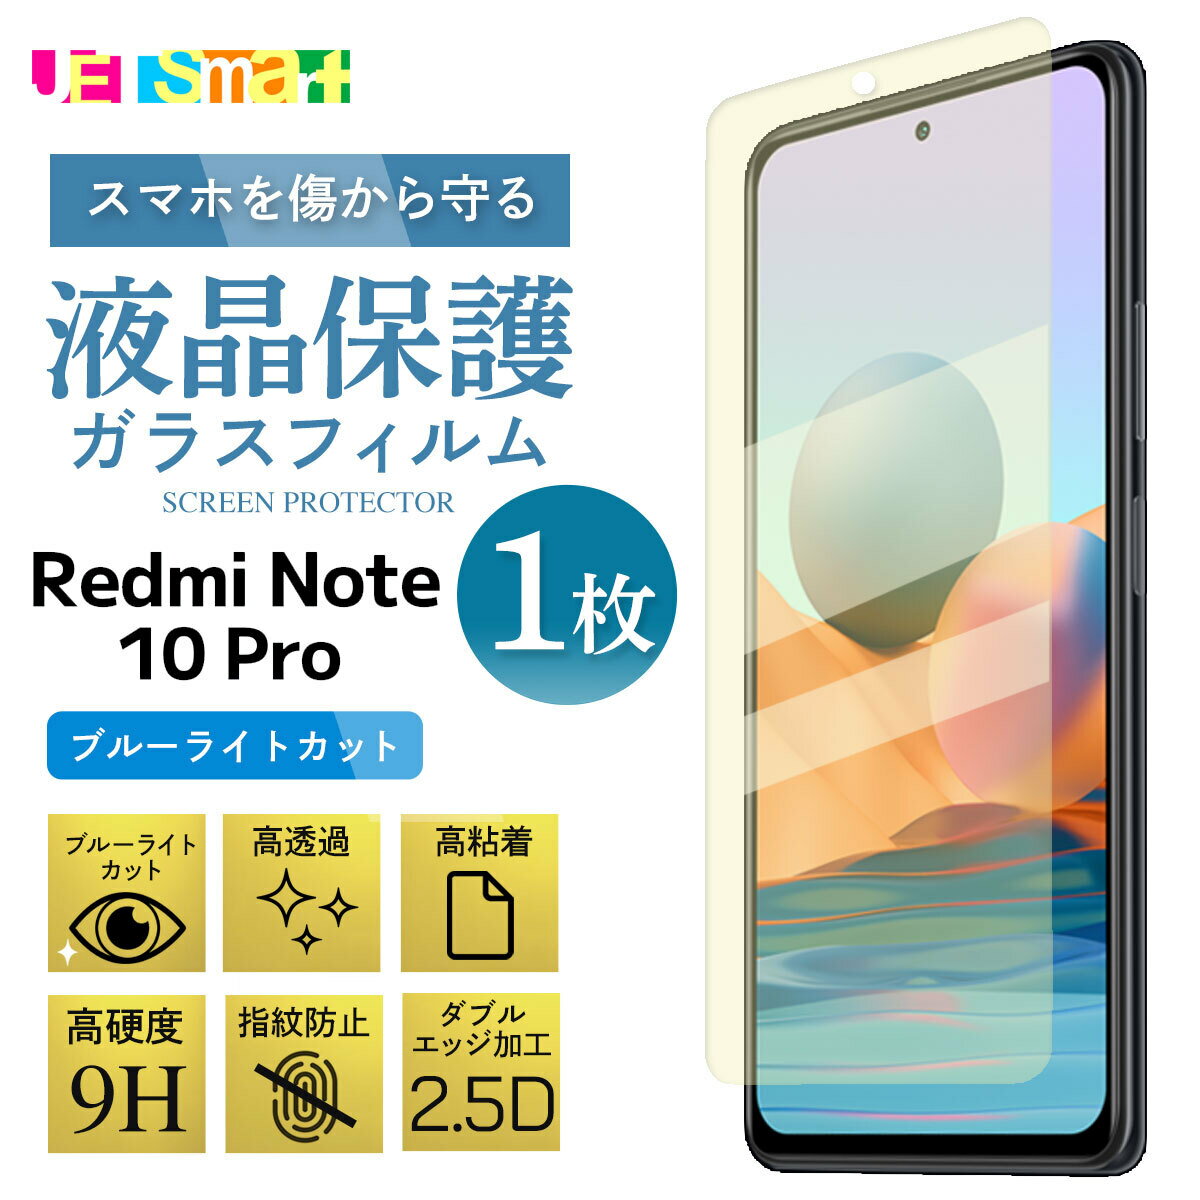 Xiaomi Redmi Note10Pro KXtB u[CgJbg 1 XIAOMI REDMI NOTE 10PRO یV[g tی KX dx9H N[i[V[gt VI~ bh~[m[gev